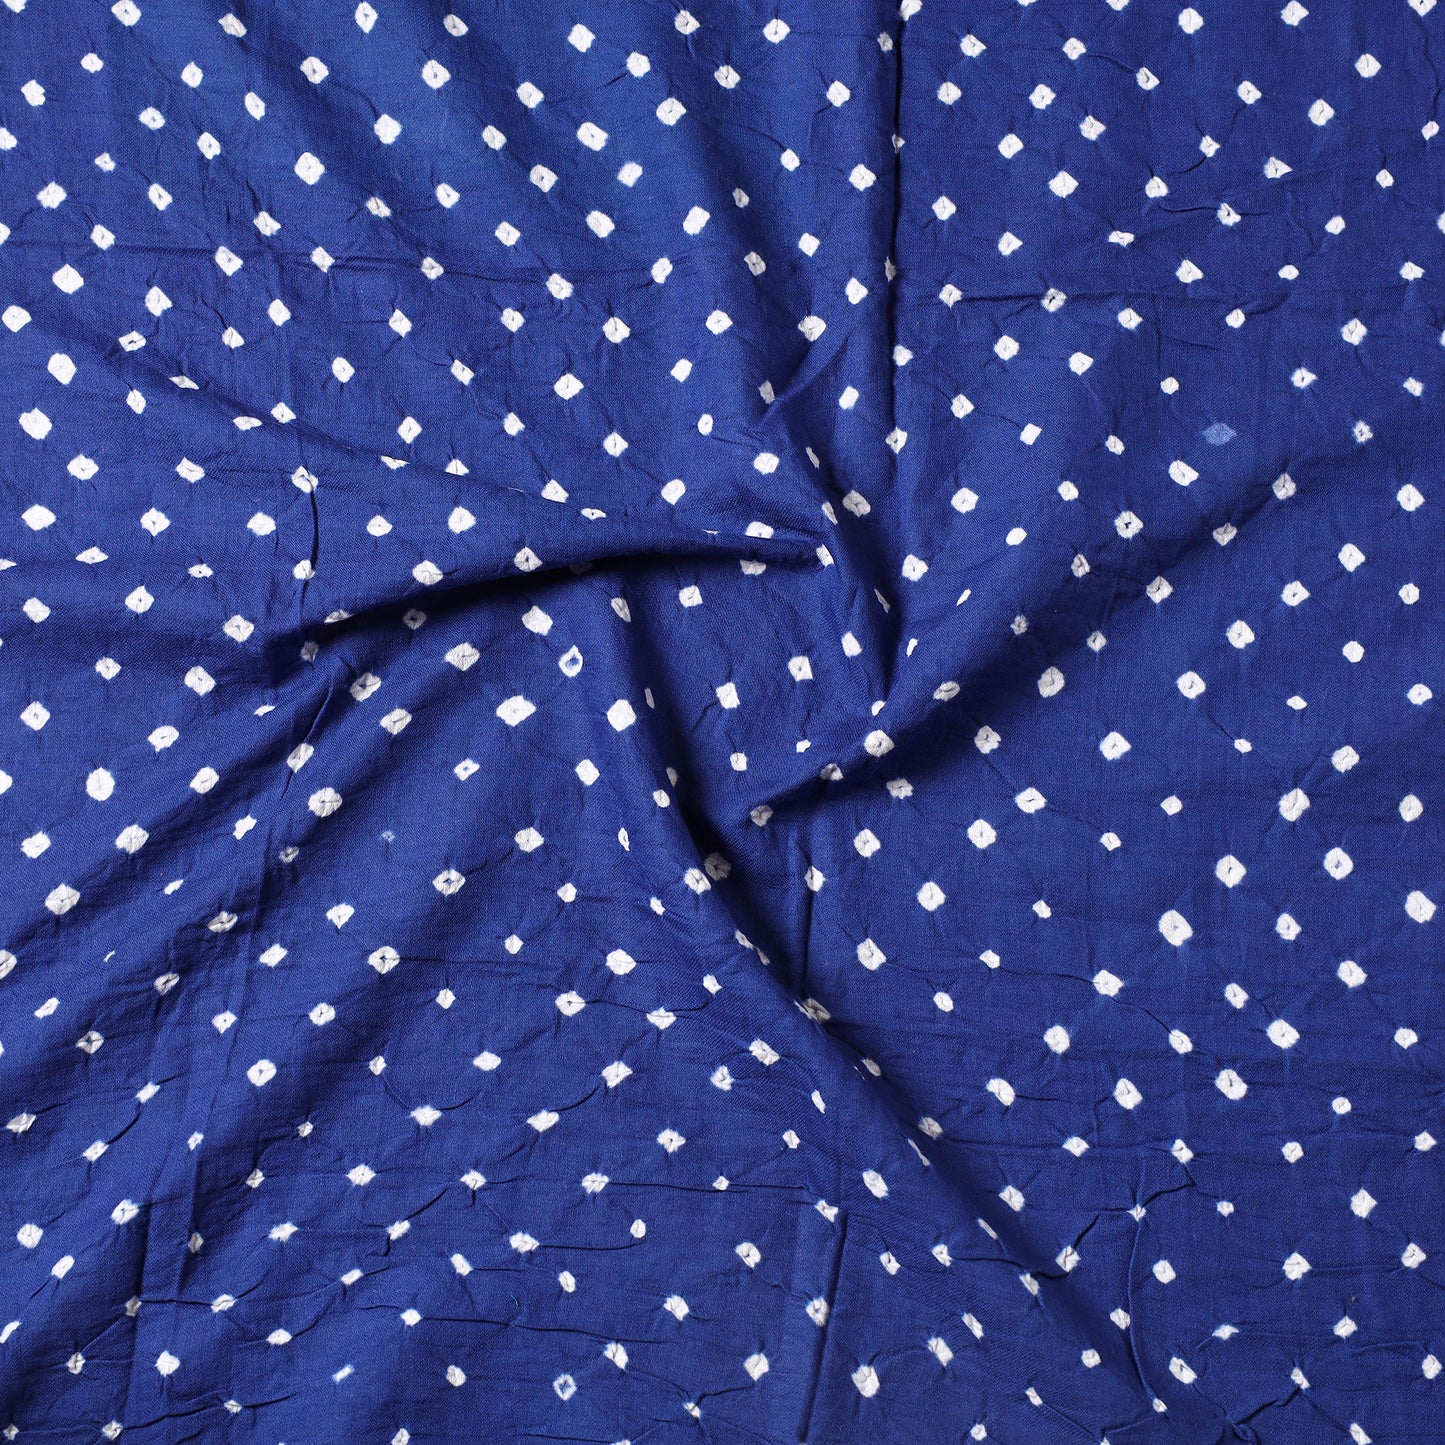 Blue - Kutch Bandhani Tie-Dye Cotton Precut Fabric (0.8 meter) 64